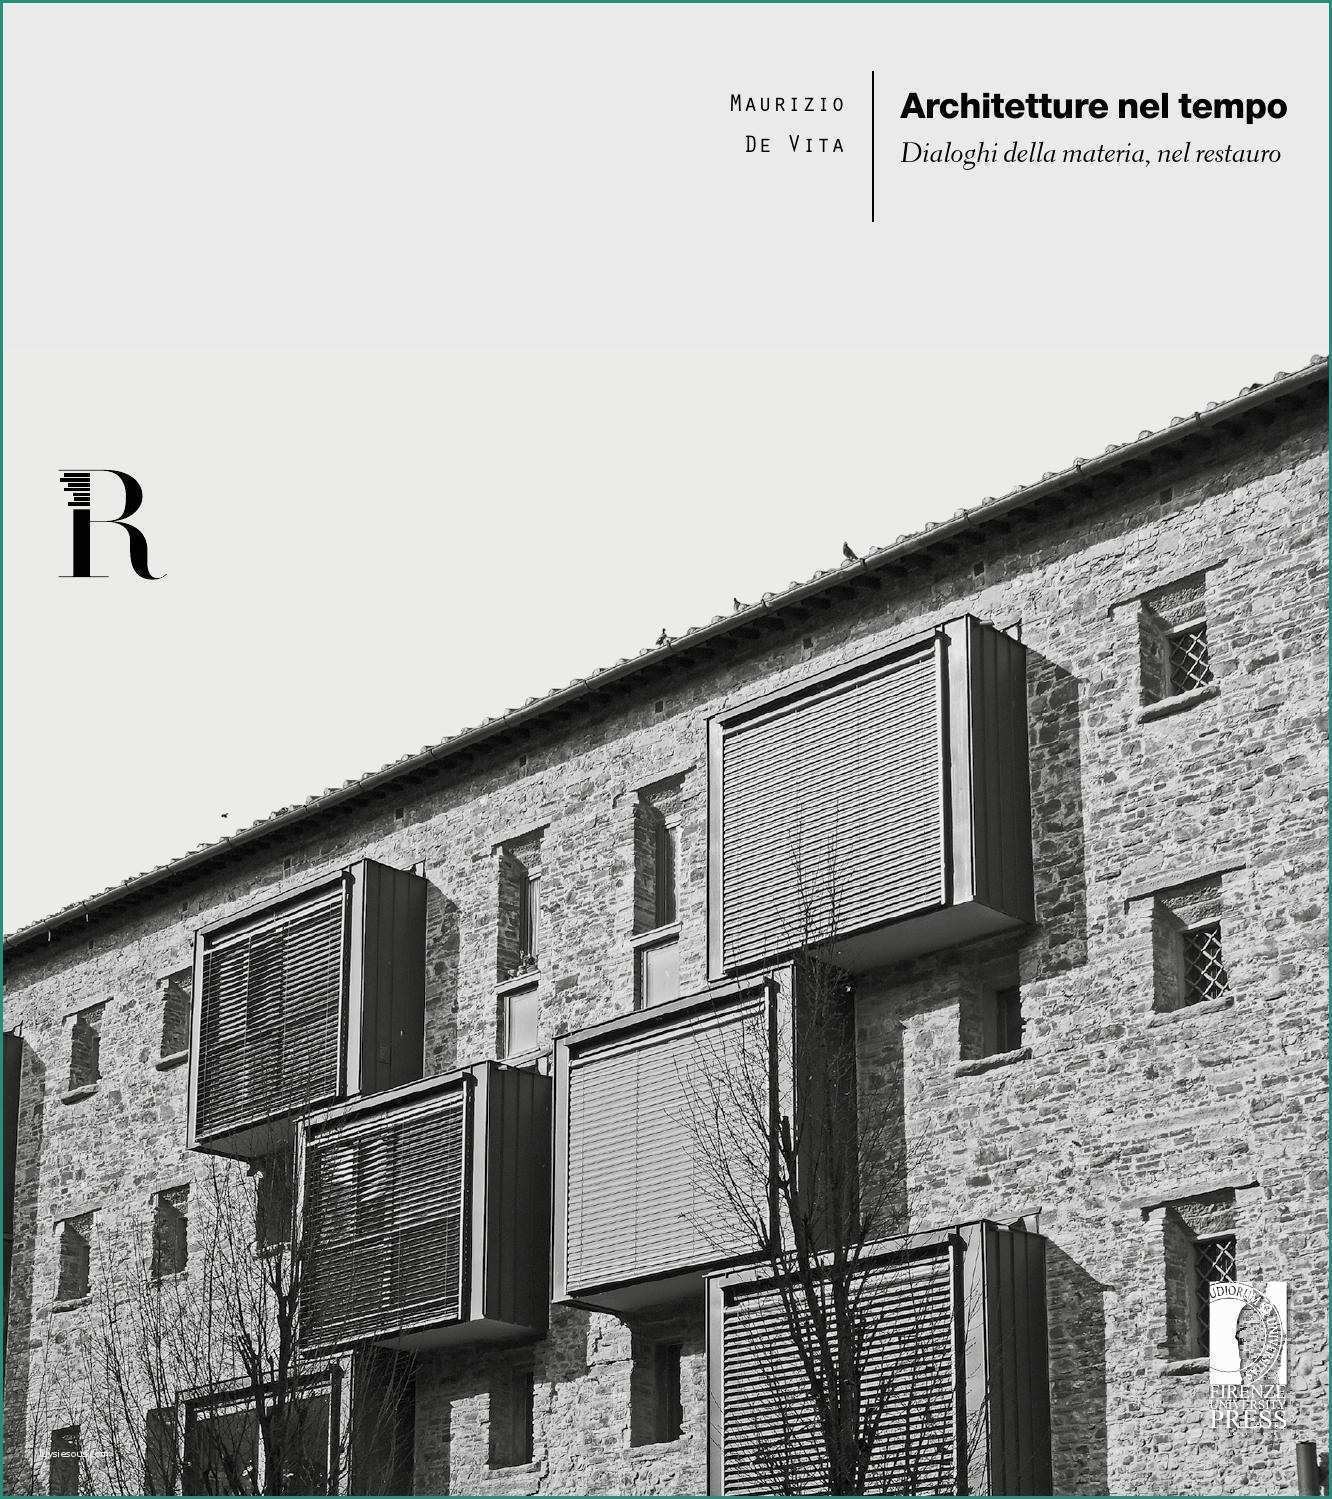 Barre Antintrusione Per Finestre E Architetture Nel Tempo Maurizio De Vita by Dida issuu